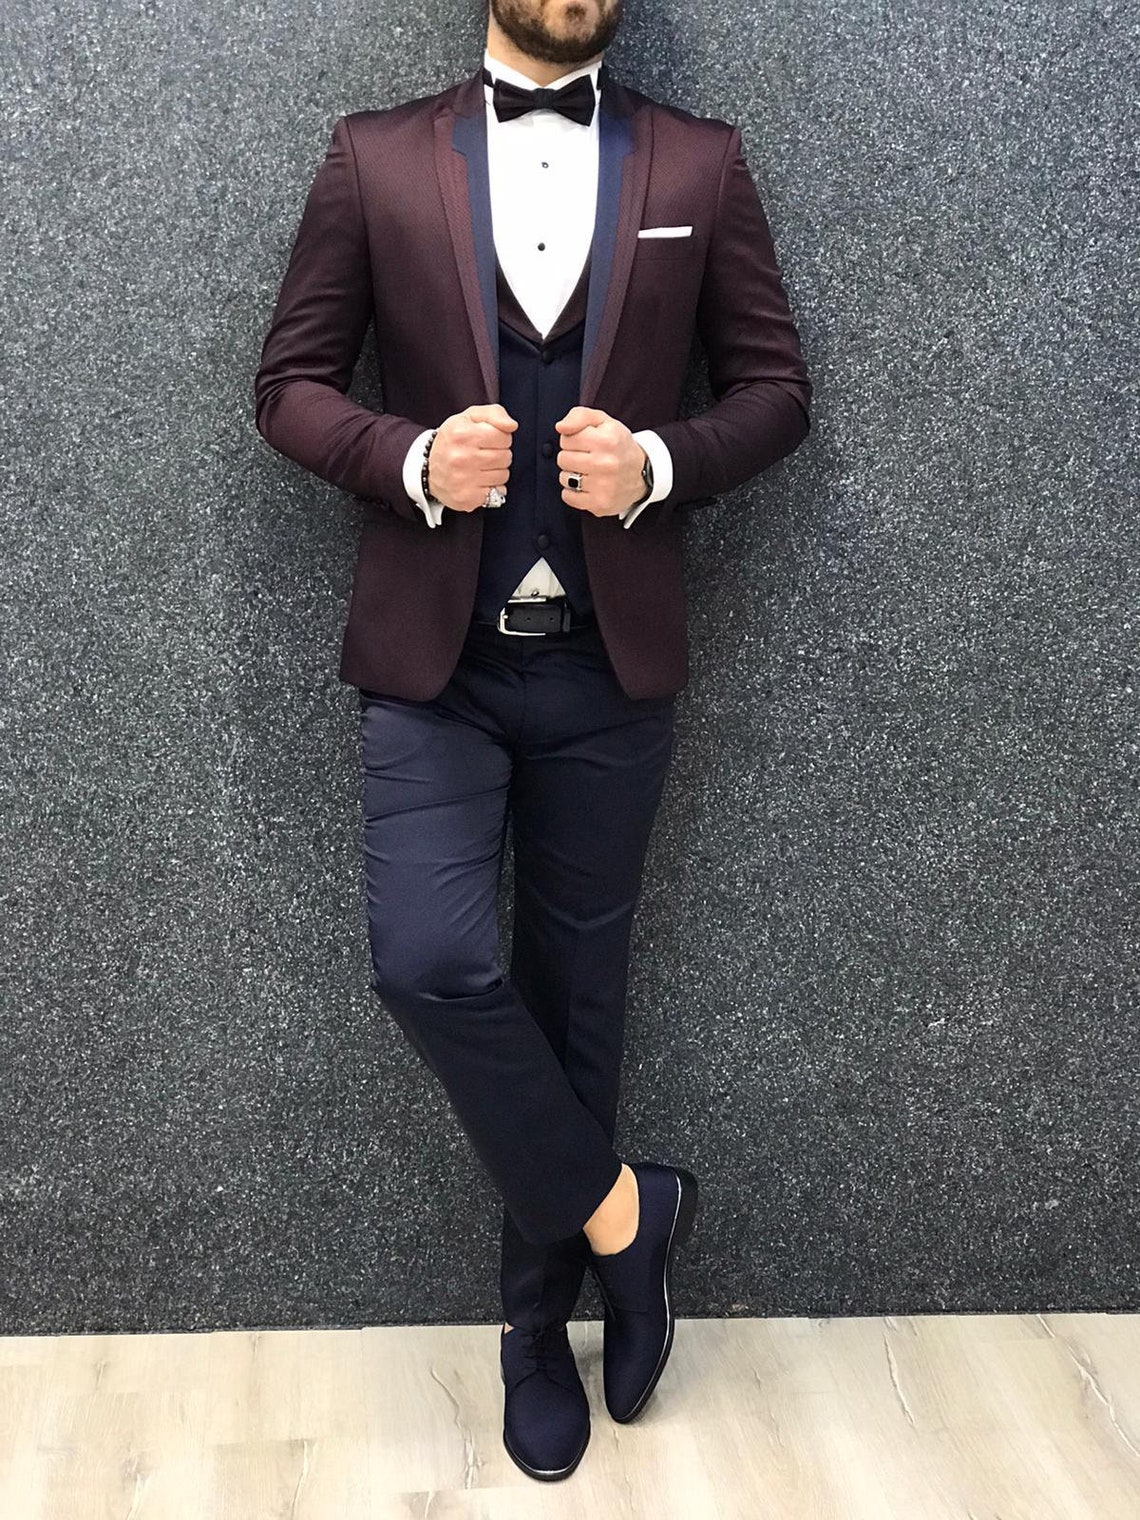 Men Slim Fit Premium Suit Tuxedo Burgundy Satin Peak Lapel | Etsy